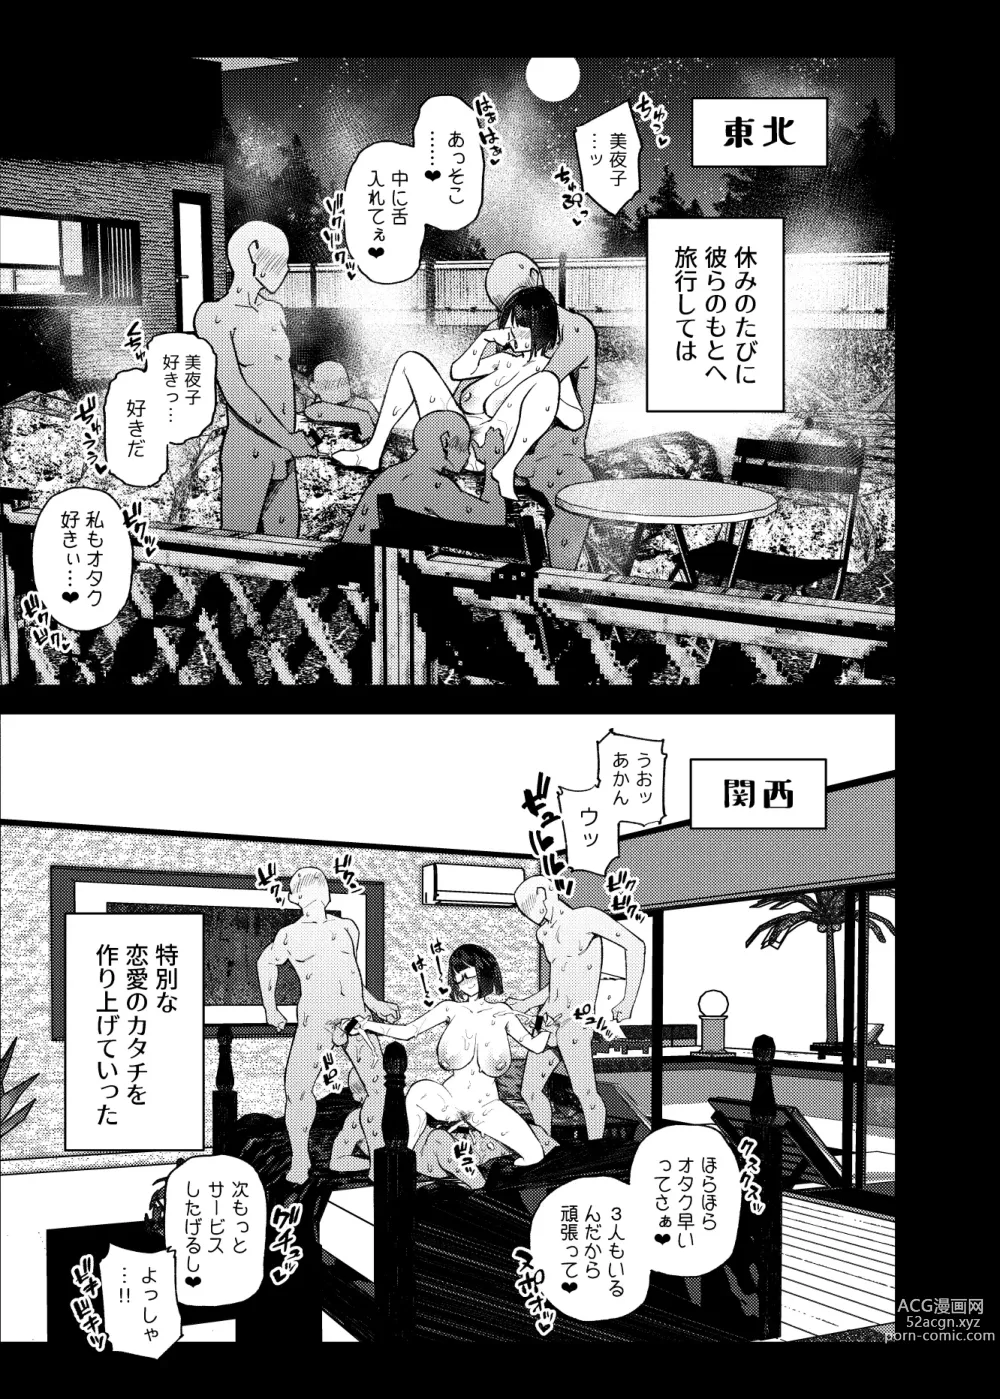 Page 96 of doujinshi JK Haishinsha desu ga Otaku to Pakoccha Dame nan desu ka?